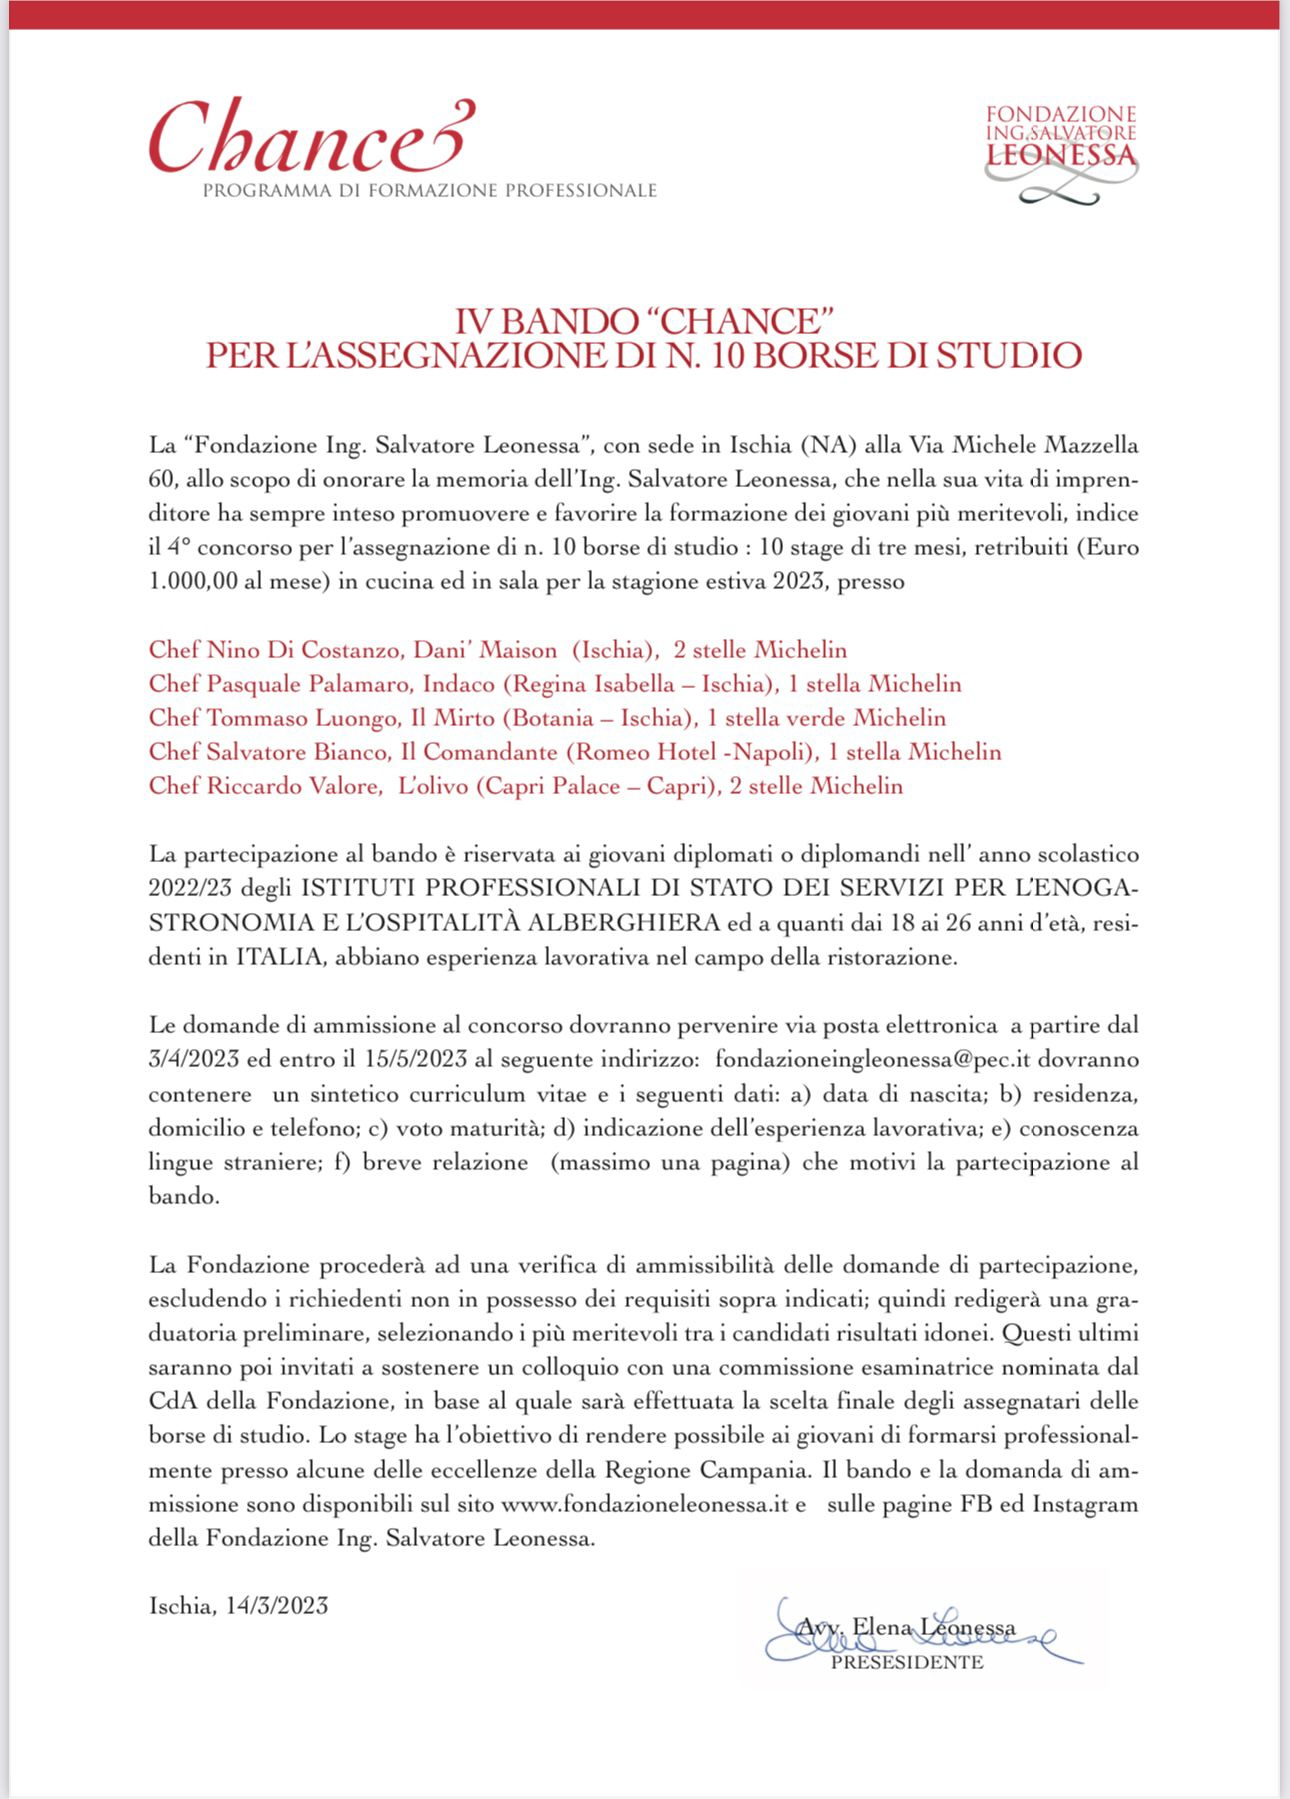 IV Bando “CHANCE” per l’assegnazione di n.10 borse di studio indetto da “Fondazione Ing. Salvatore Leonessa”